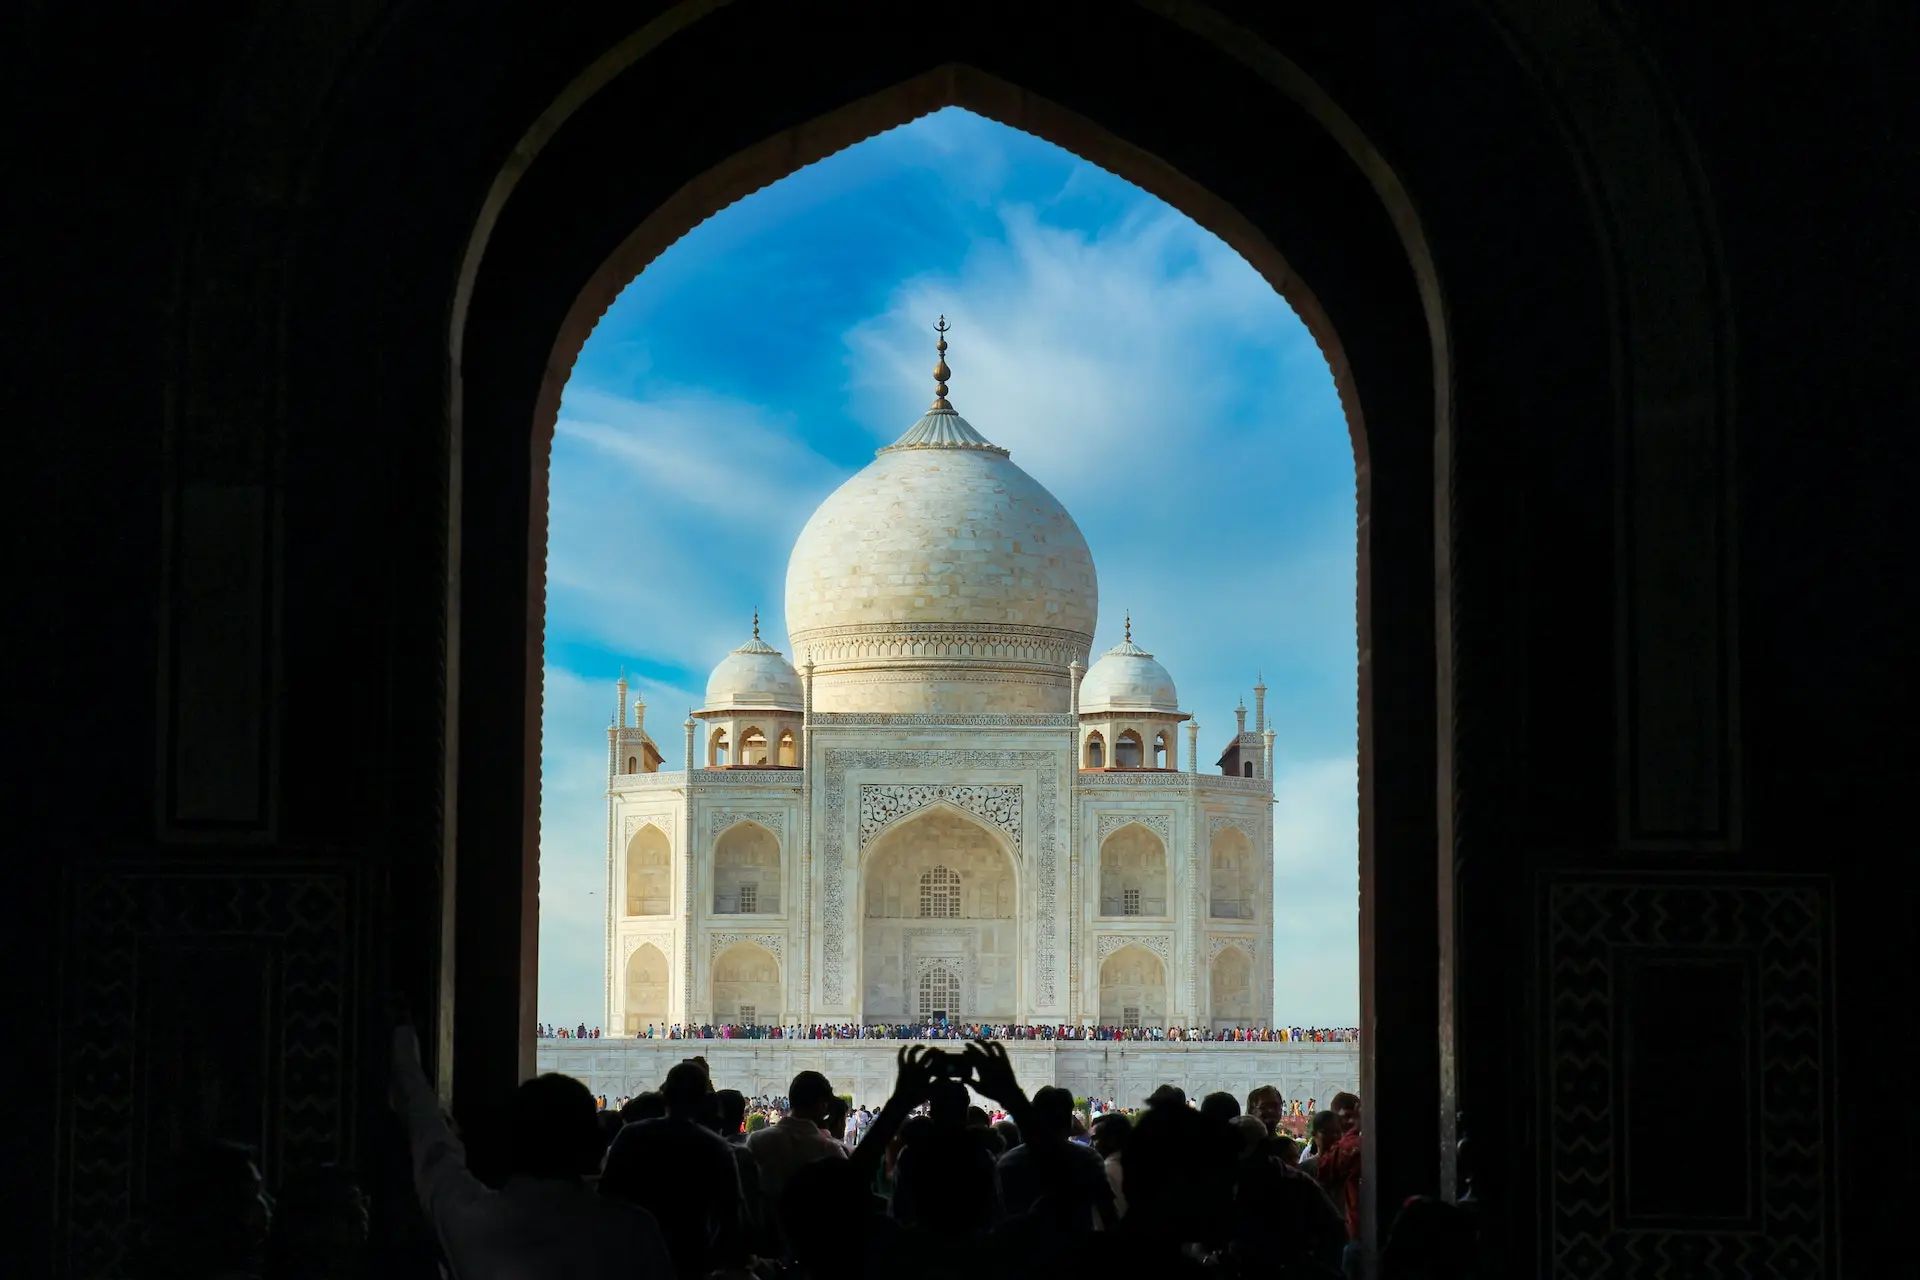 Taj Mahal image from the-castle door